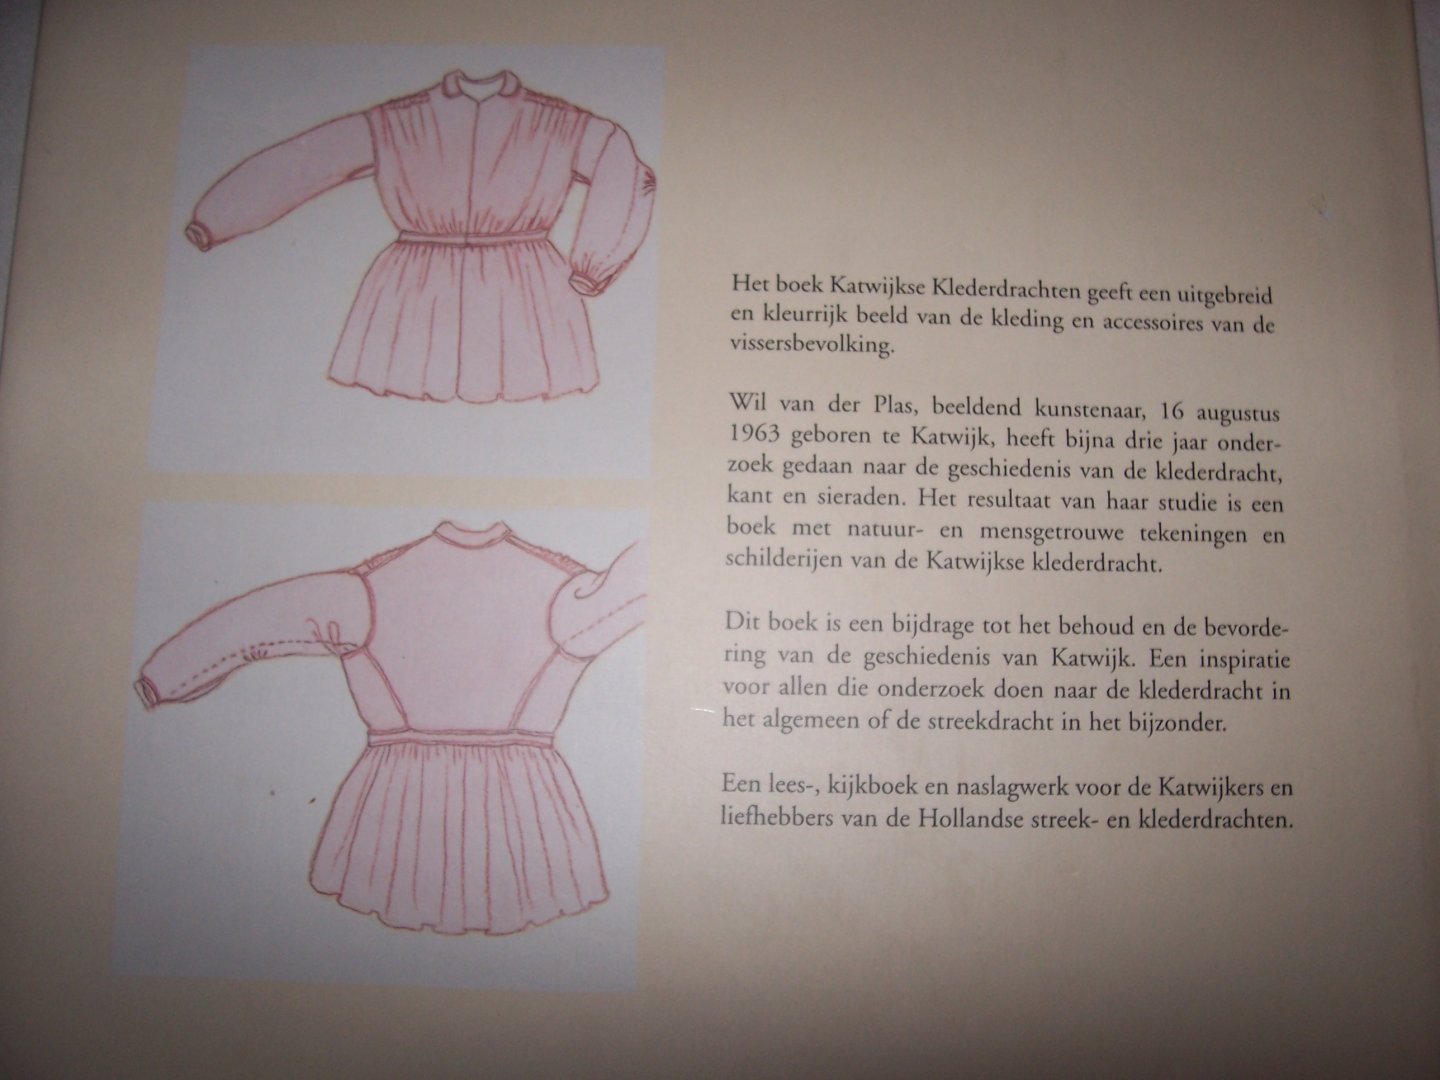 Plas, Wil van der - Katwijkse klederdrachten 1800 - 1985